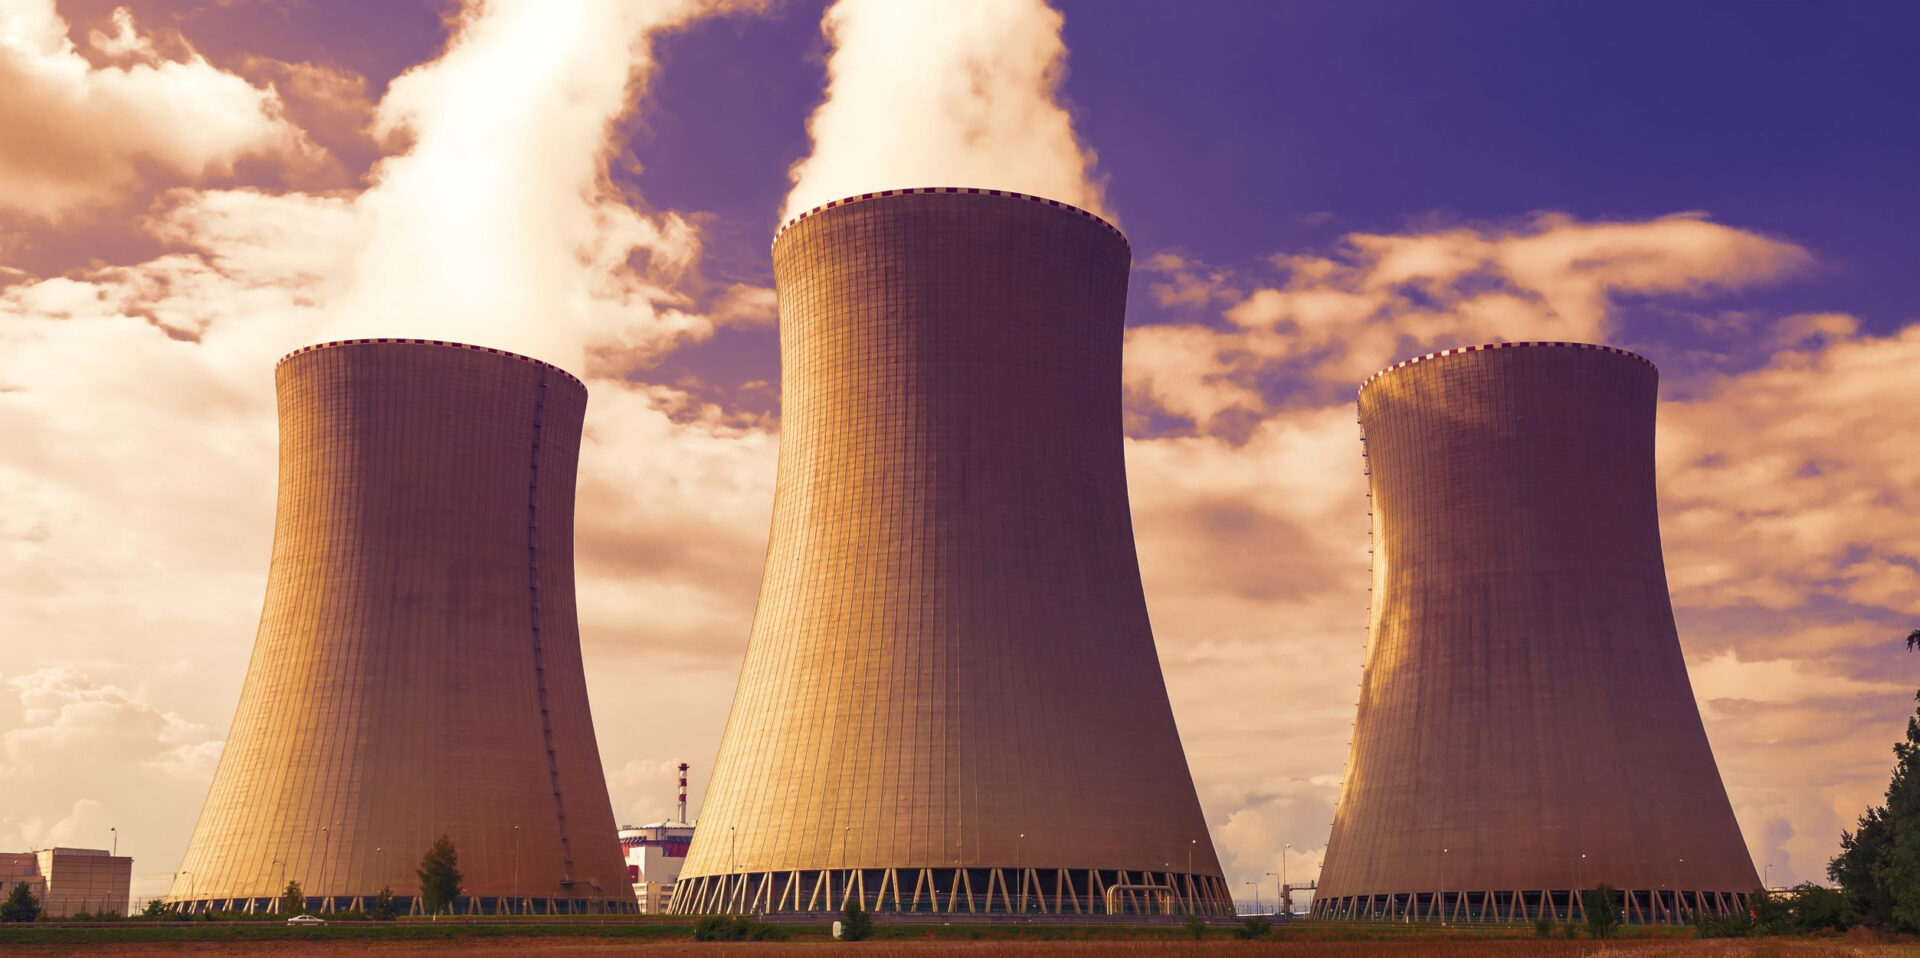 Ingénieur nucléaire domaine des centrale nucléaire de production d'energie - Prométhée T&I